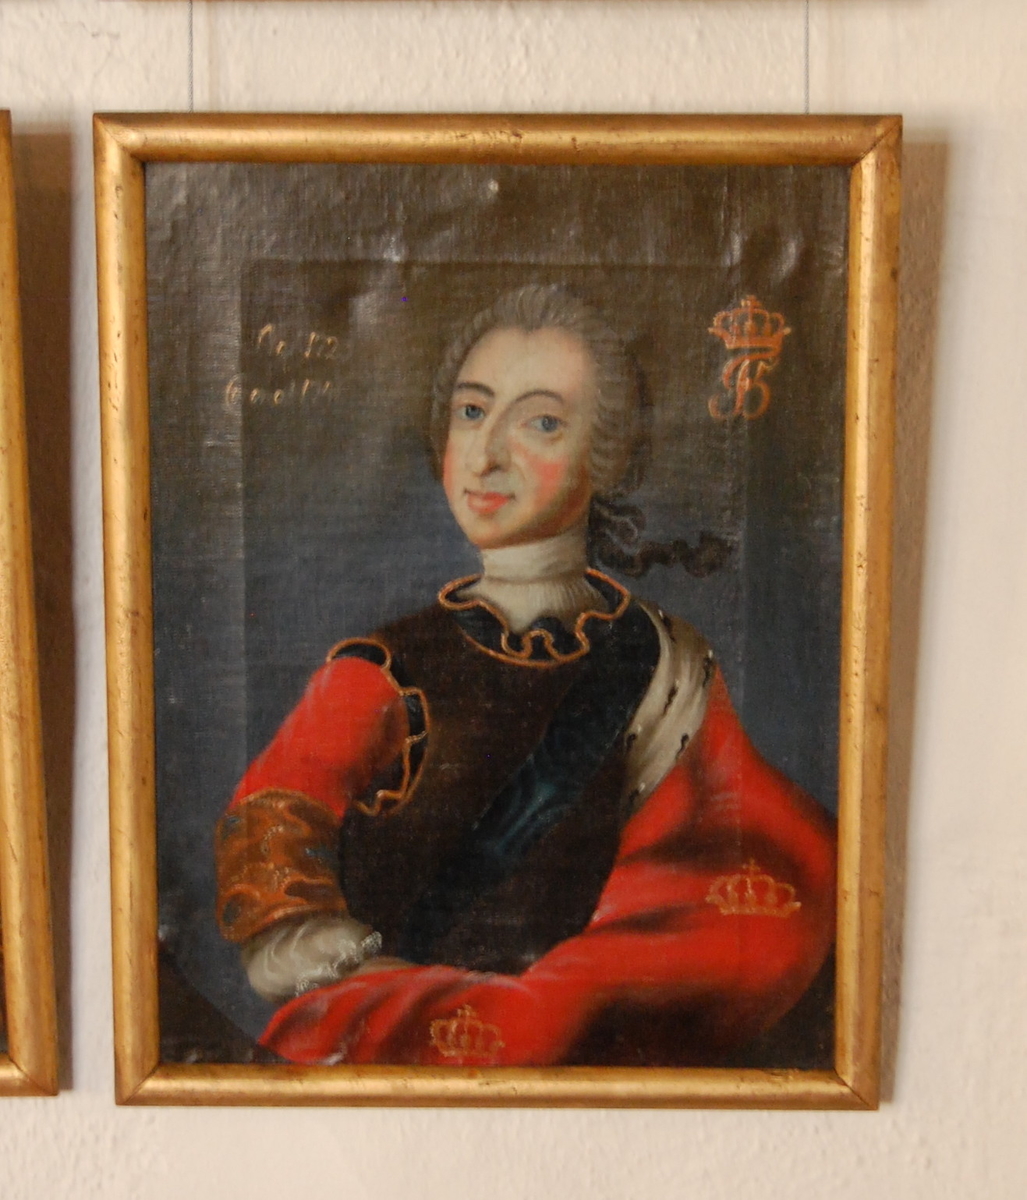 Portrett av Fredrik V. Halvfigur i kvart profil mot høyre, hodet i halv profil mot venstre. Rød kappe med gullkroner over venstre skulder, mørk brun harnisk. Forgylt ramme.